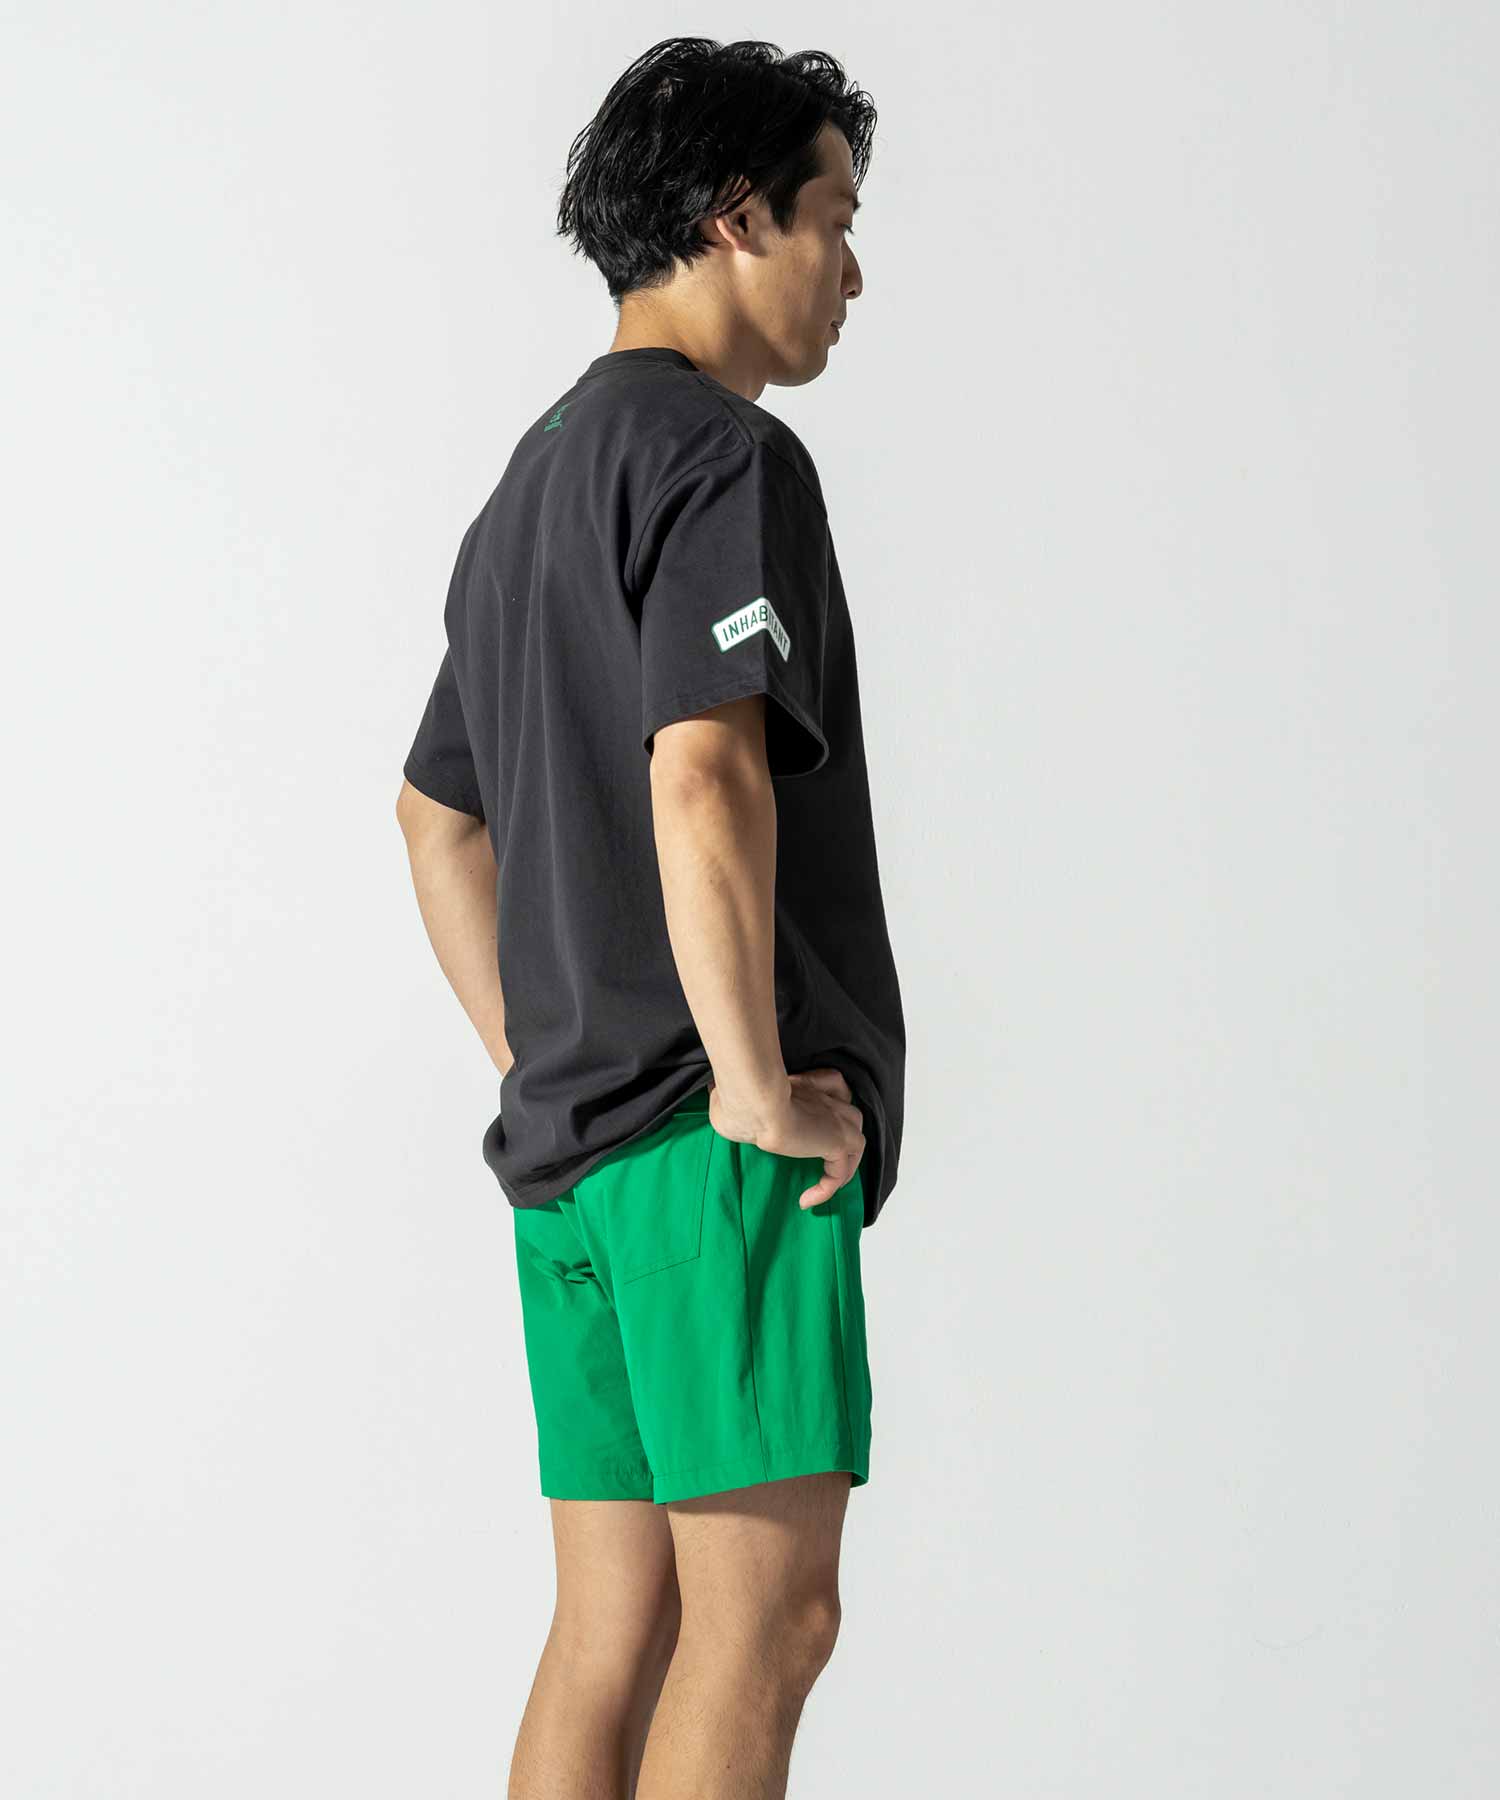 【MENS】Boarders Crossing T-shirts サーファープリントTシャツ カジュアルファッション サーフィン レジャー スケートボード inhabitant(インハビタント)